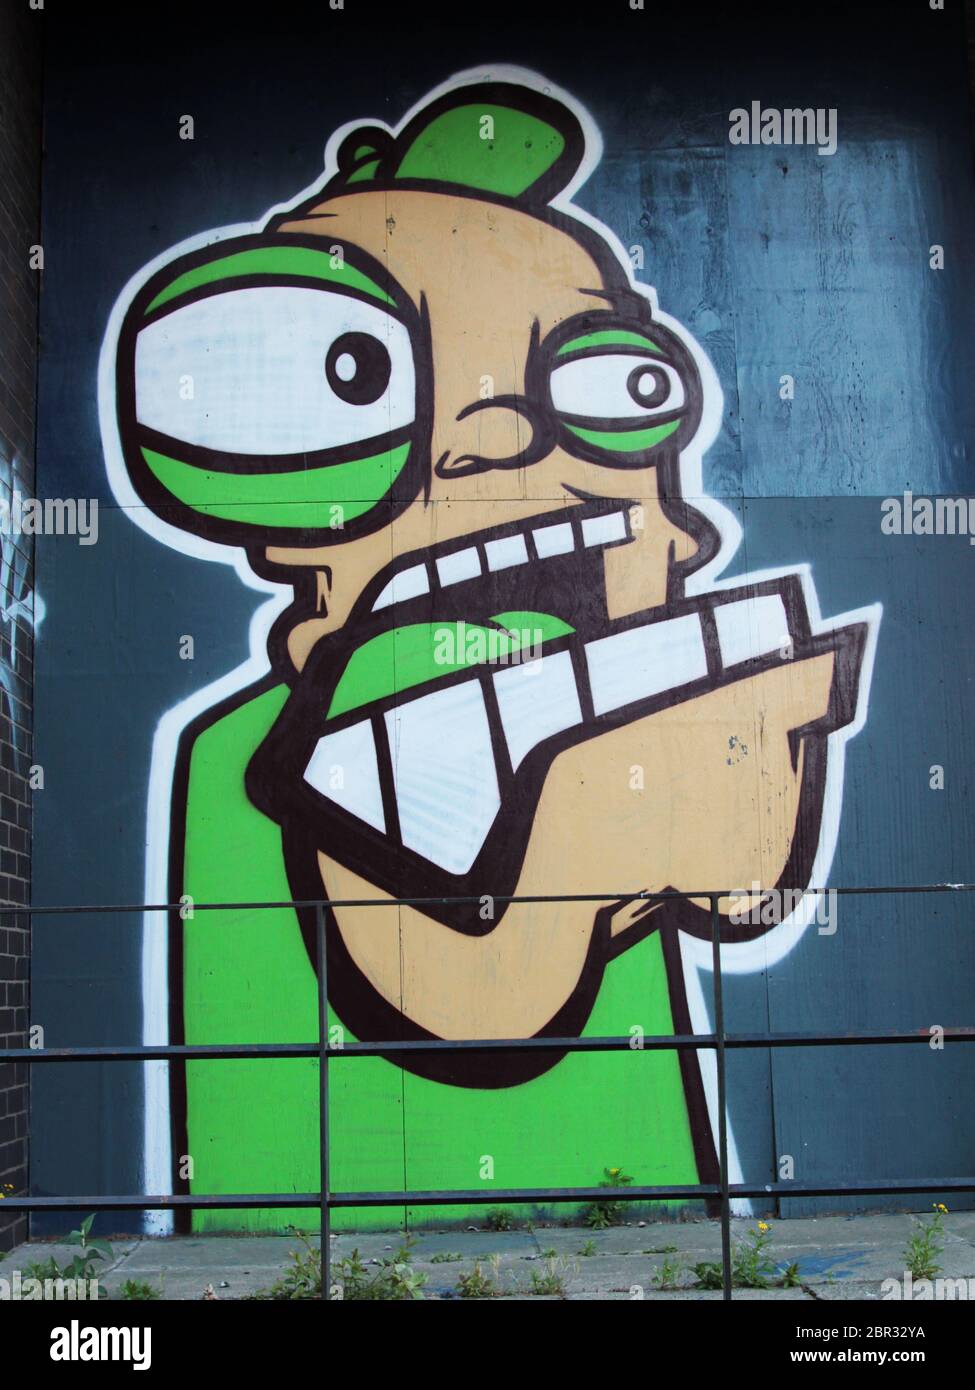 Un hombre grande y enojado ha sido apuñalado y luego pintado en una pared en Glasgow. ¡tiene ojos abultados, dientes grandes y una manera amenazadora! ALAN WYLIE/ALAMY© Foto de stock